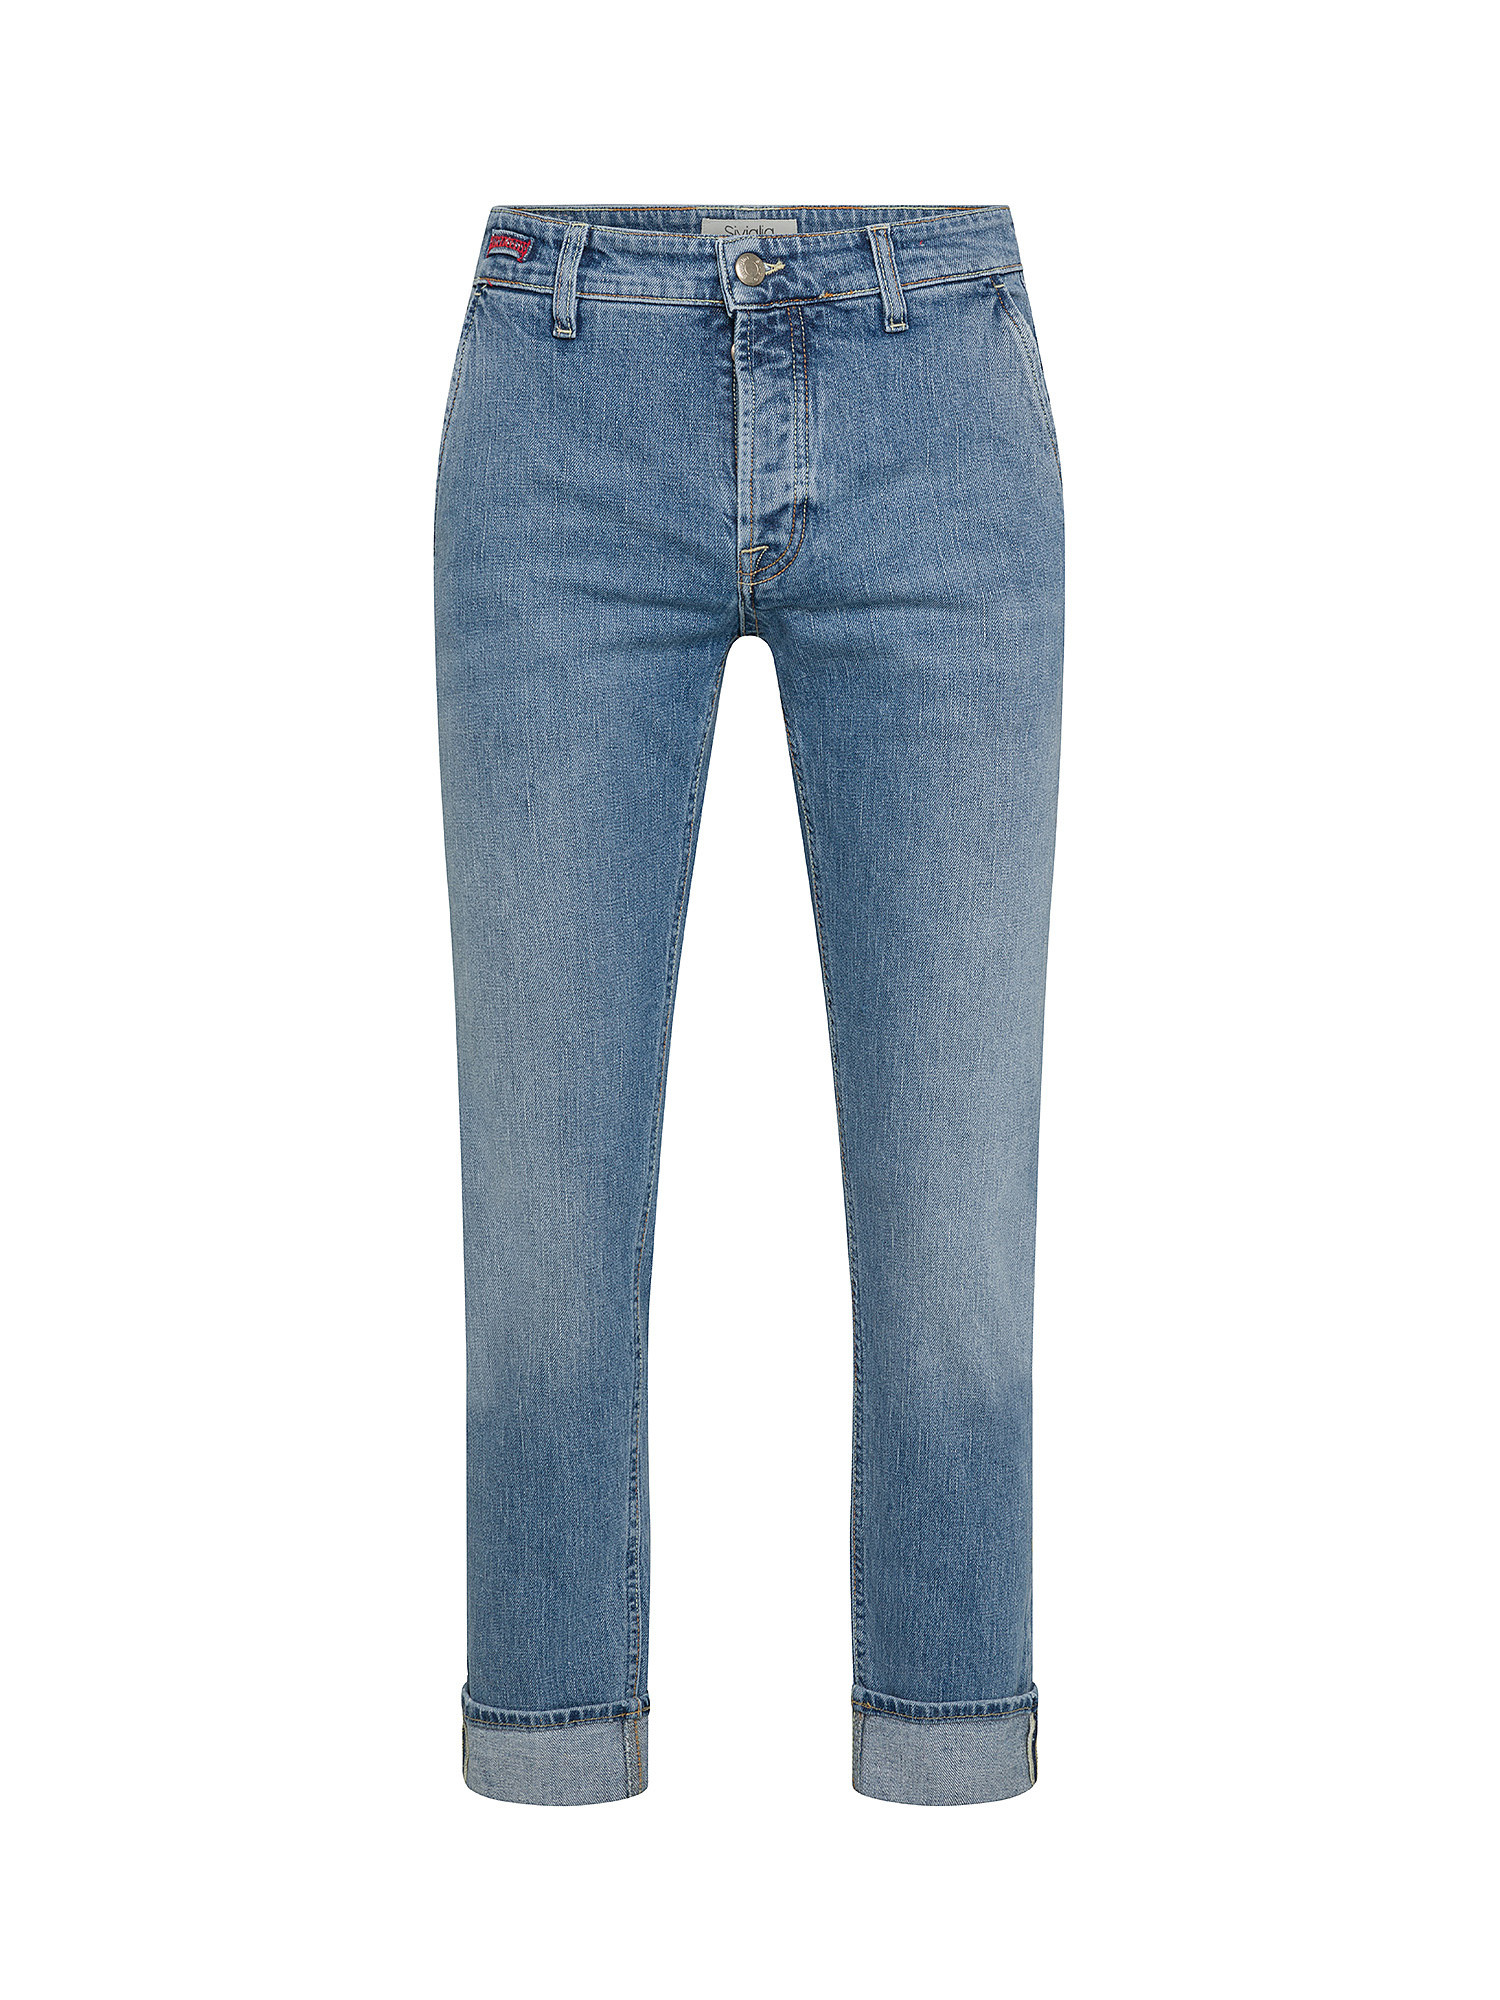 Siviglia - Jeans cinque tasche, Denim, large image number 0